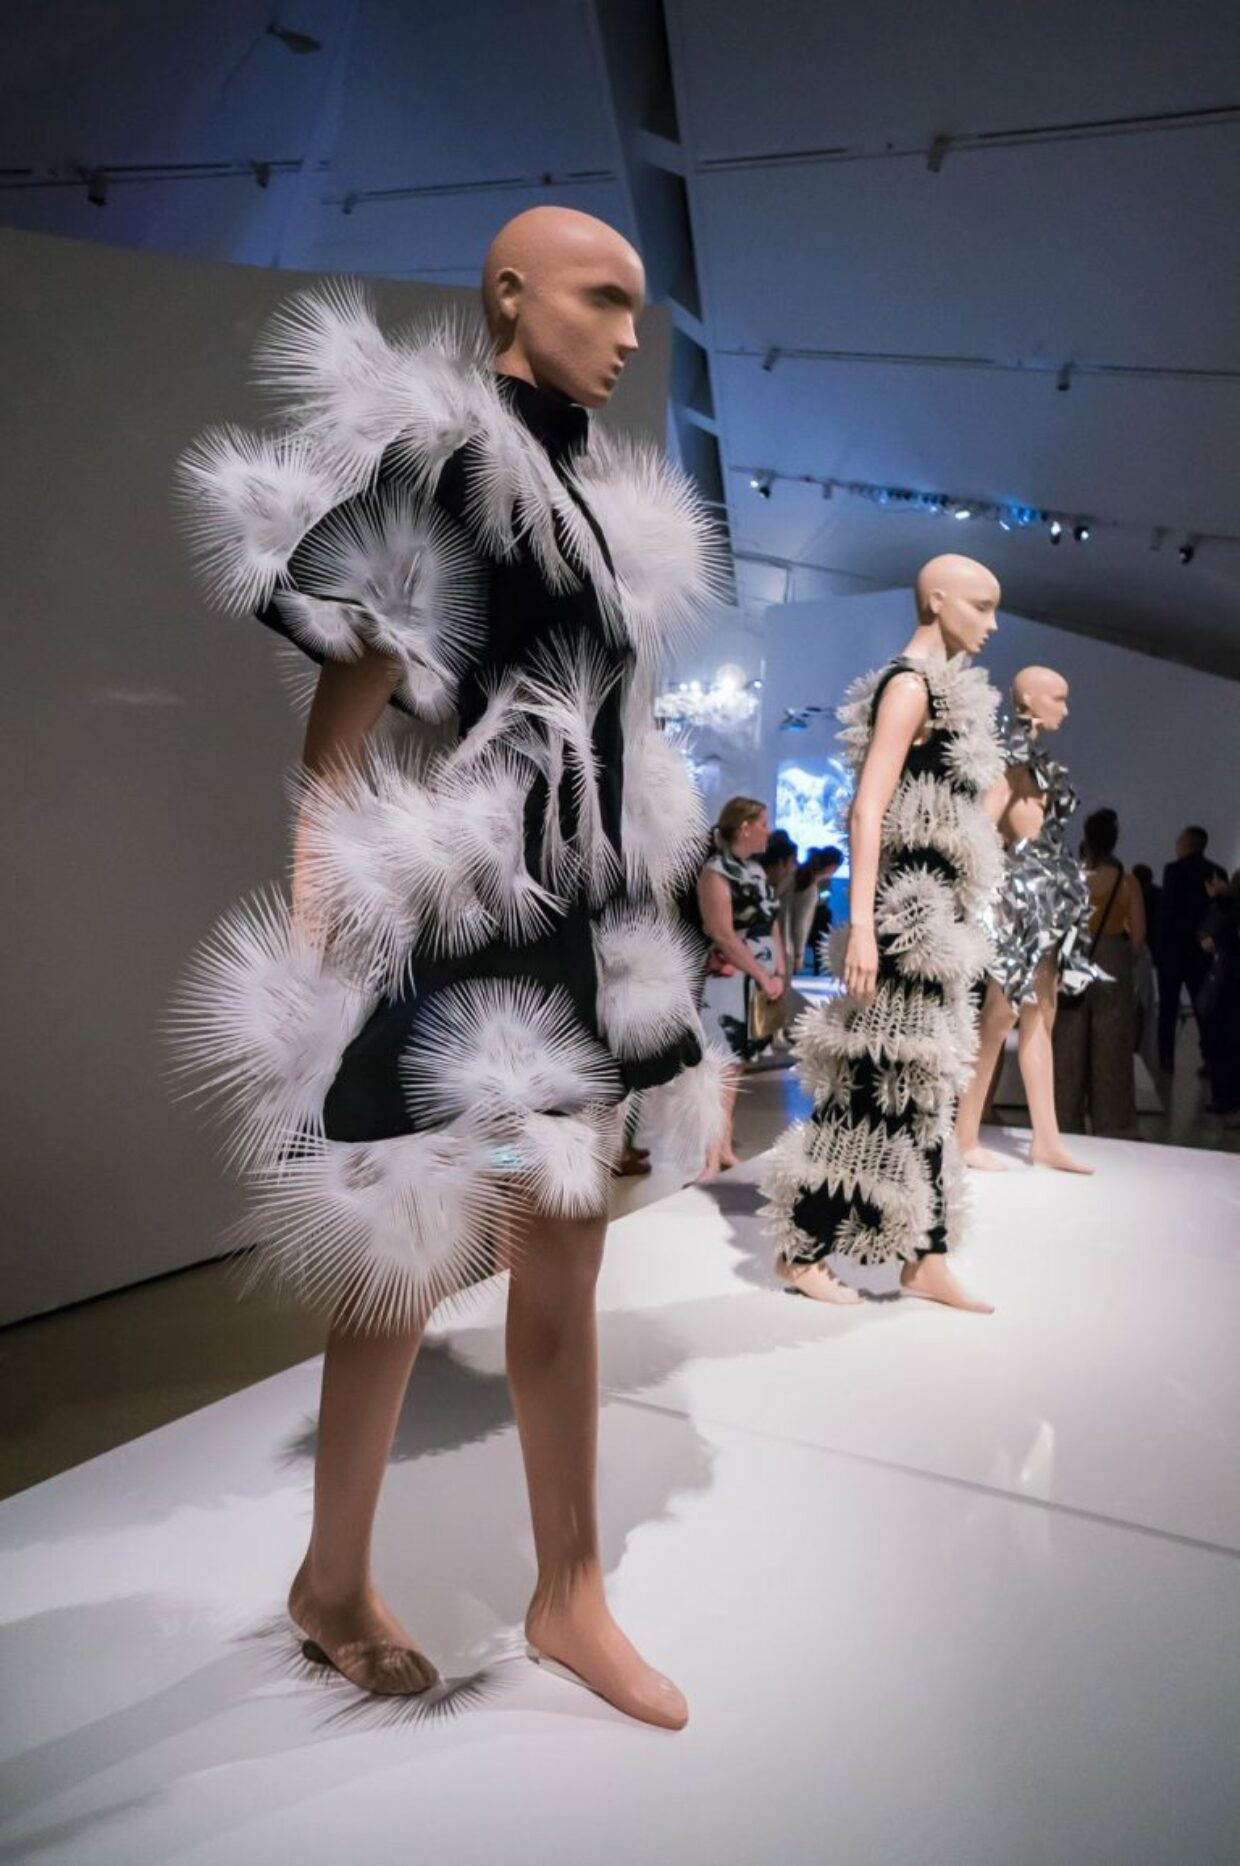 Iris Van Herpen: “Transforming Fashion” at the Royal Ontario Museum | 1